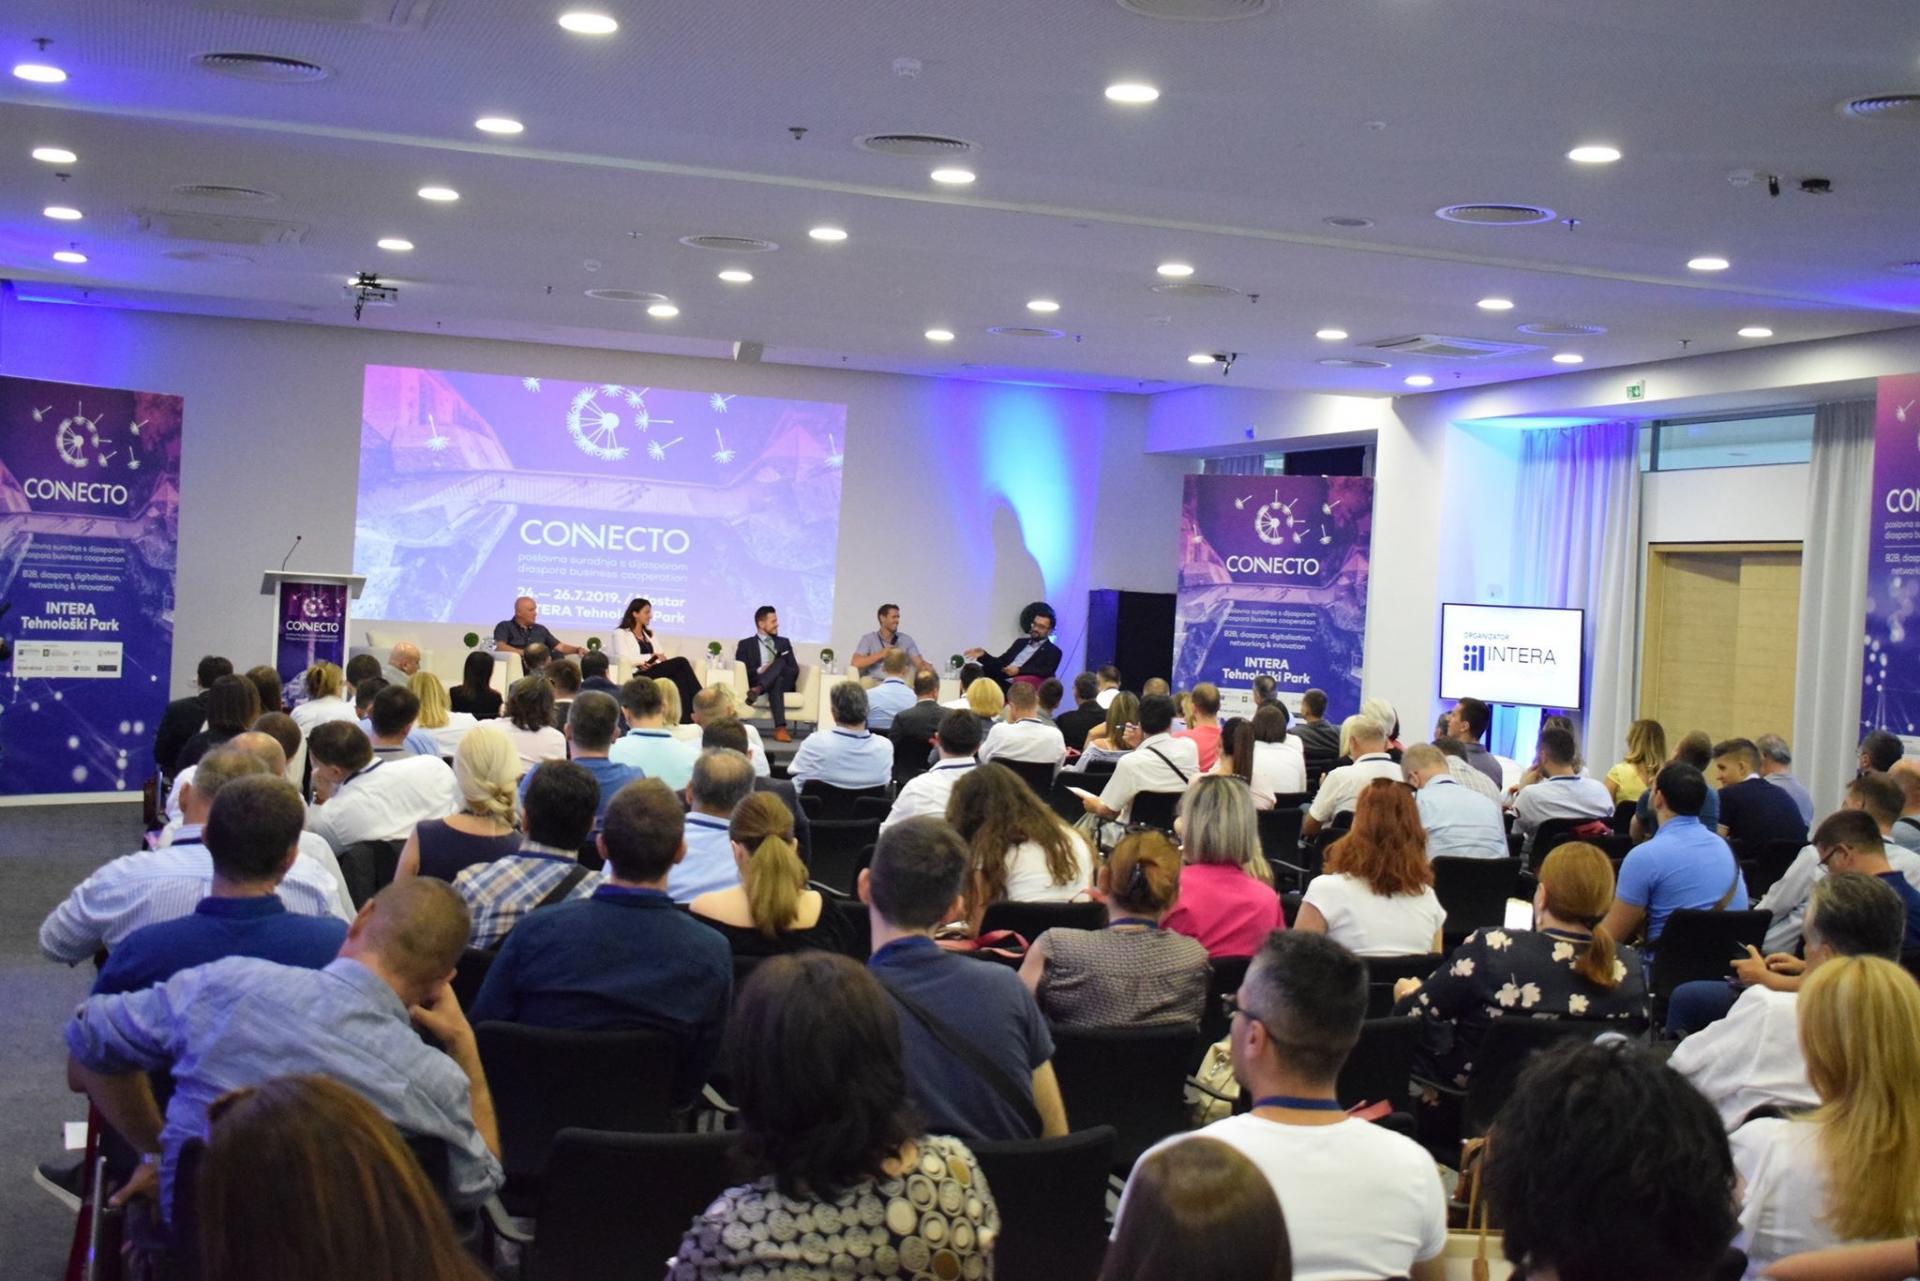 Iskoristite jedinstvenu priliku za pronalazak poslovnih partnera iz cijele BiH: Prijavite se na "Connecto" konferenciju